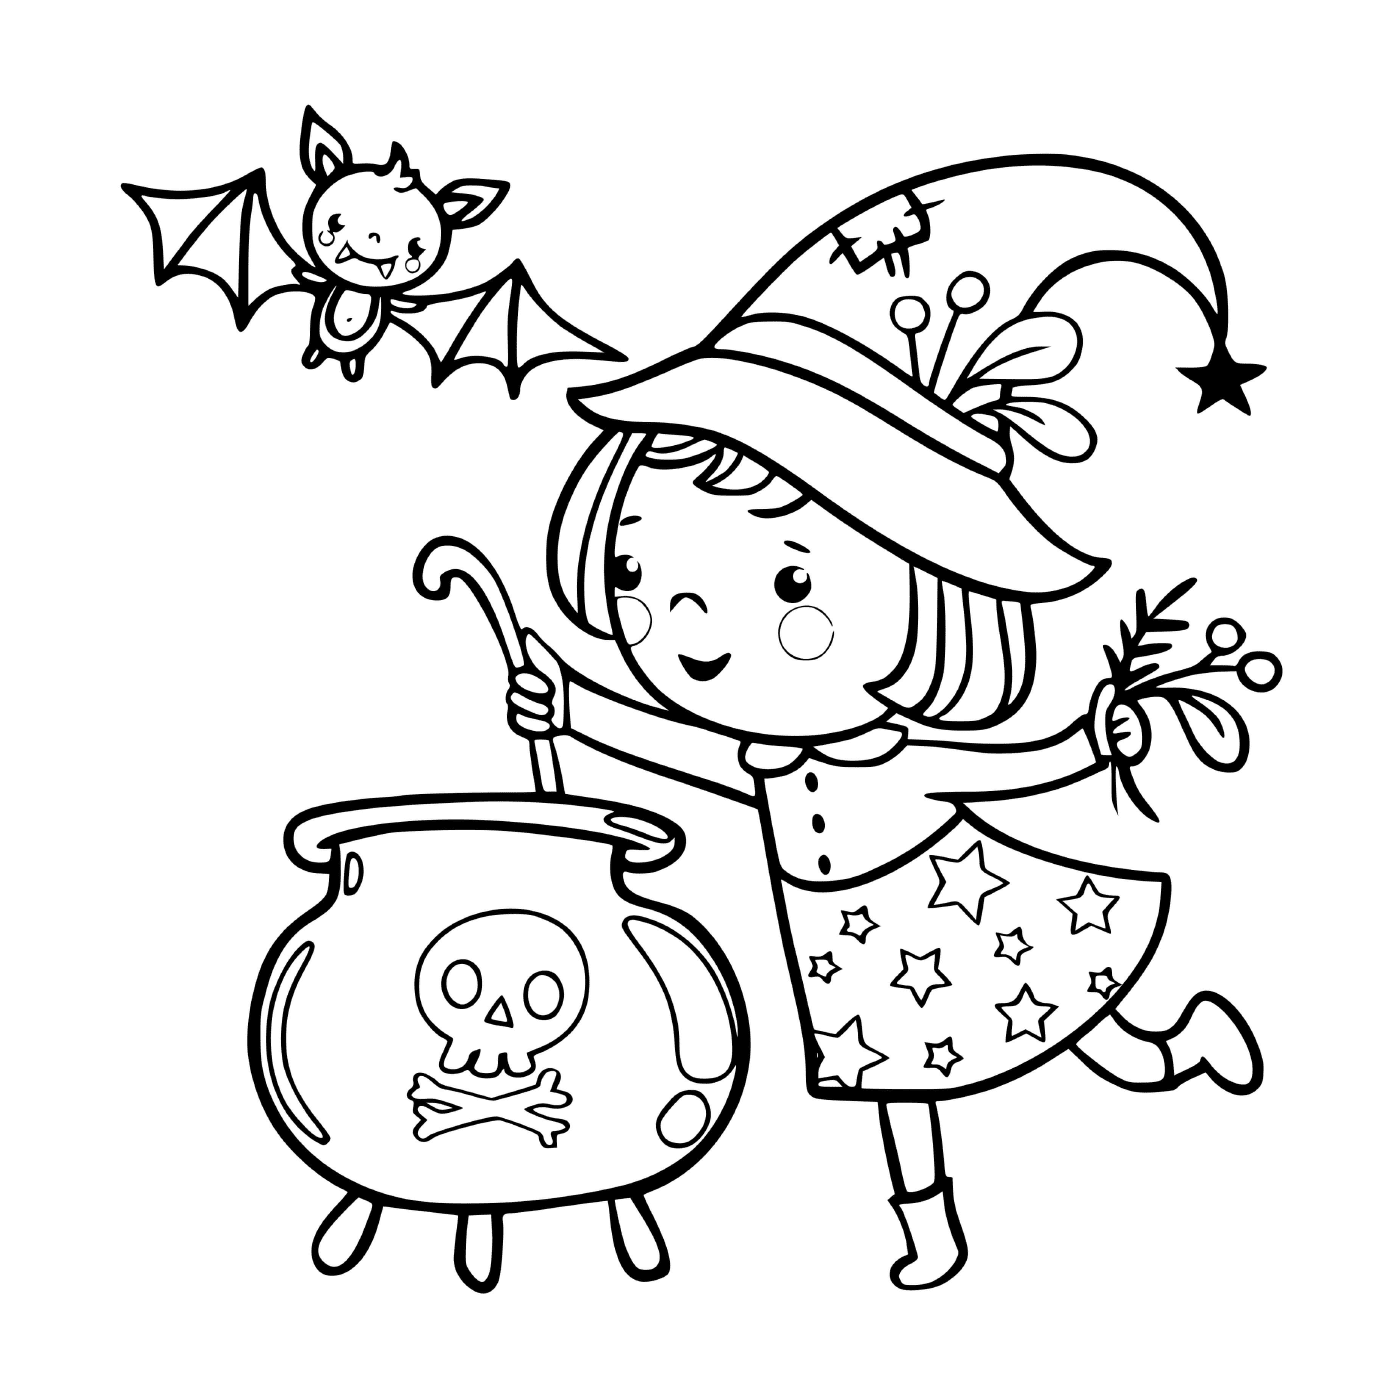  Kleine Hexe bereitet eine magische Suppe 